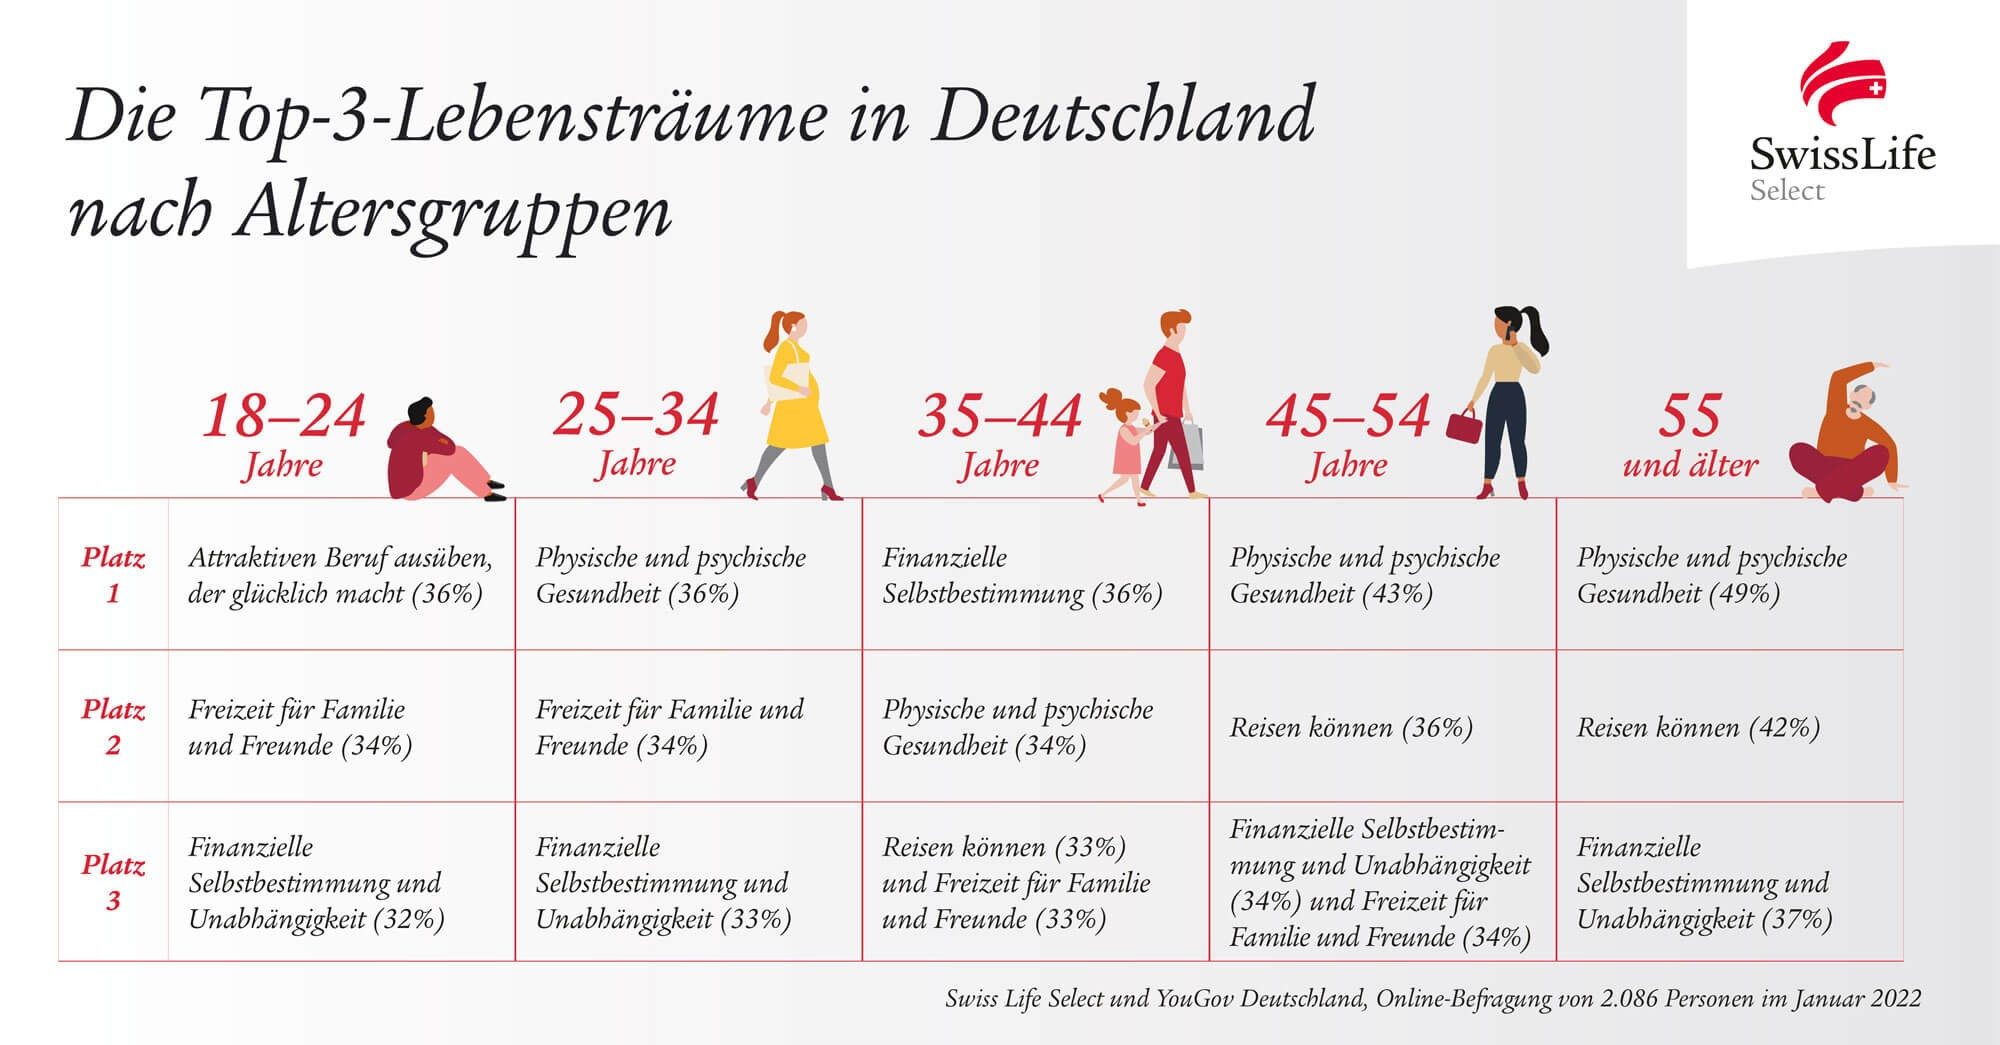 Die Top-3-Lebensträume in Deutschland nach Altersgruppen